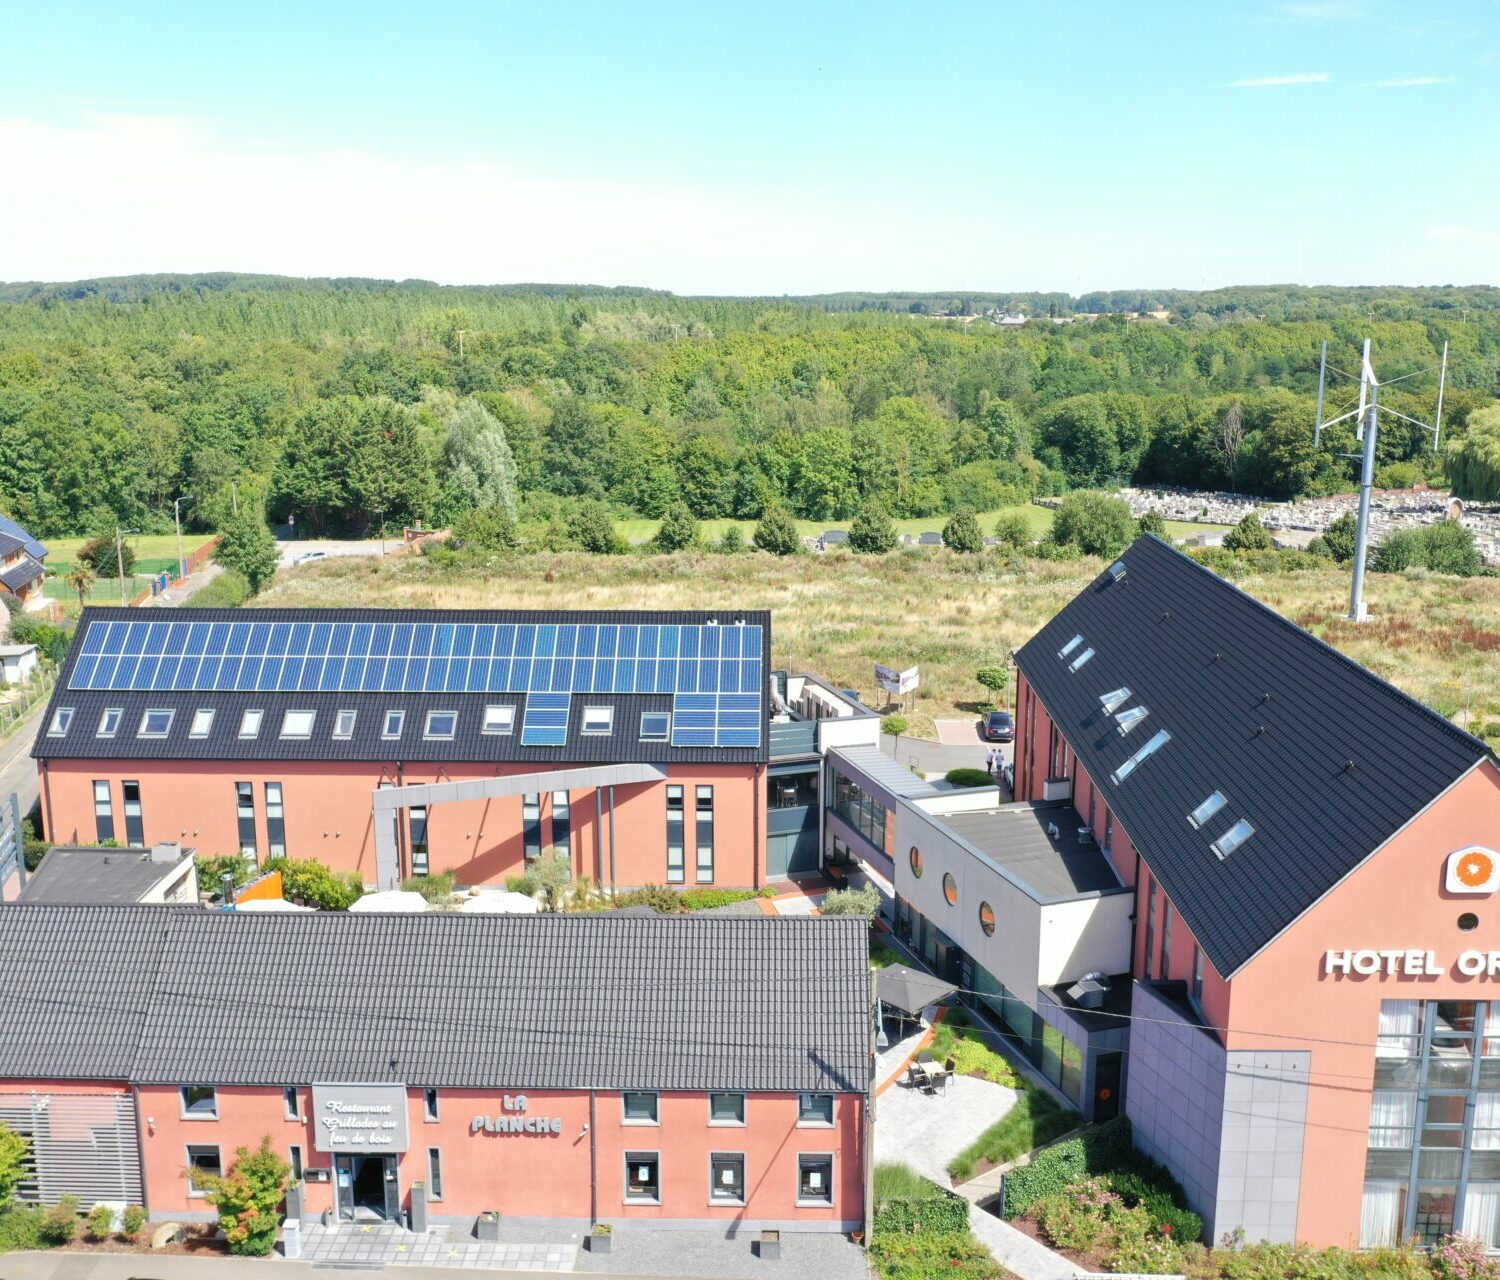 Hôtel éco-responsable avec panneaux solaires